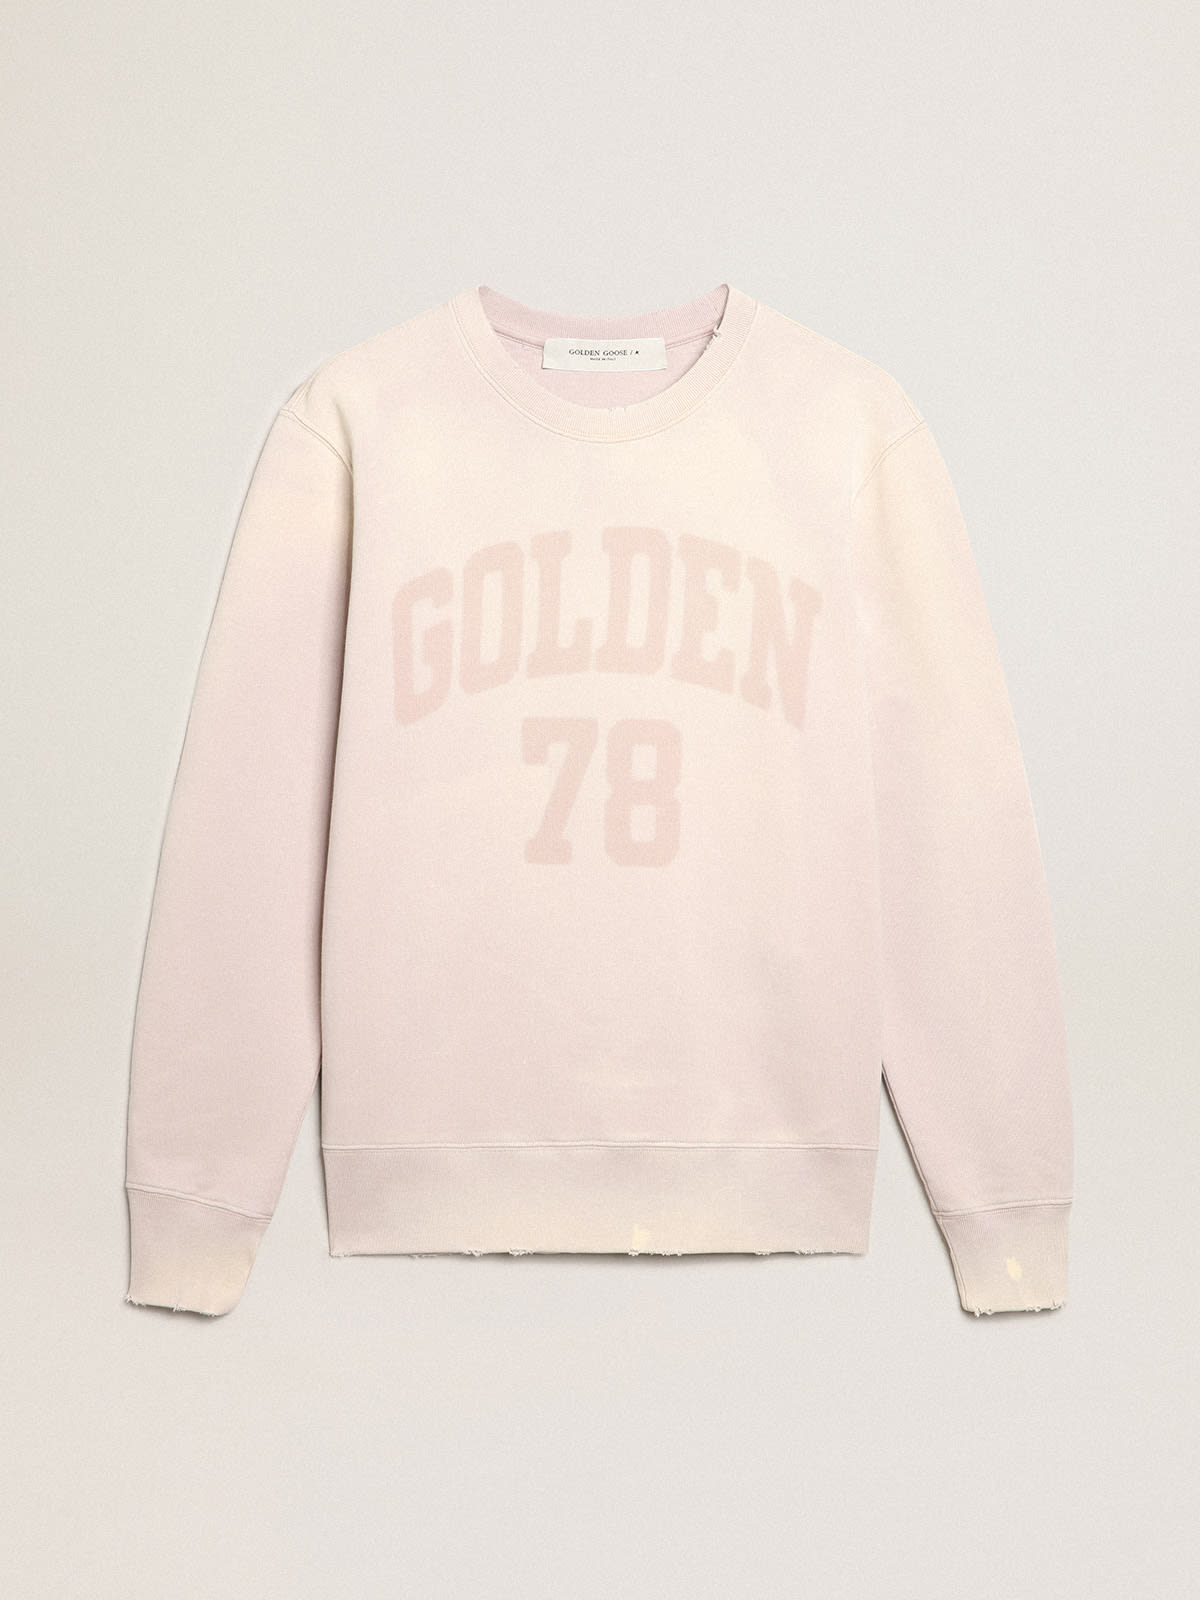 Golden Goose - Felpa color rosa pallido dal trattamento distressed in 